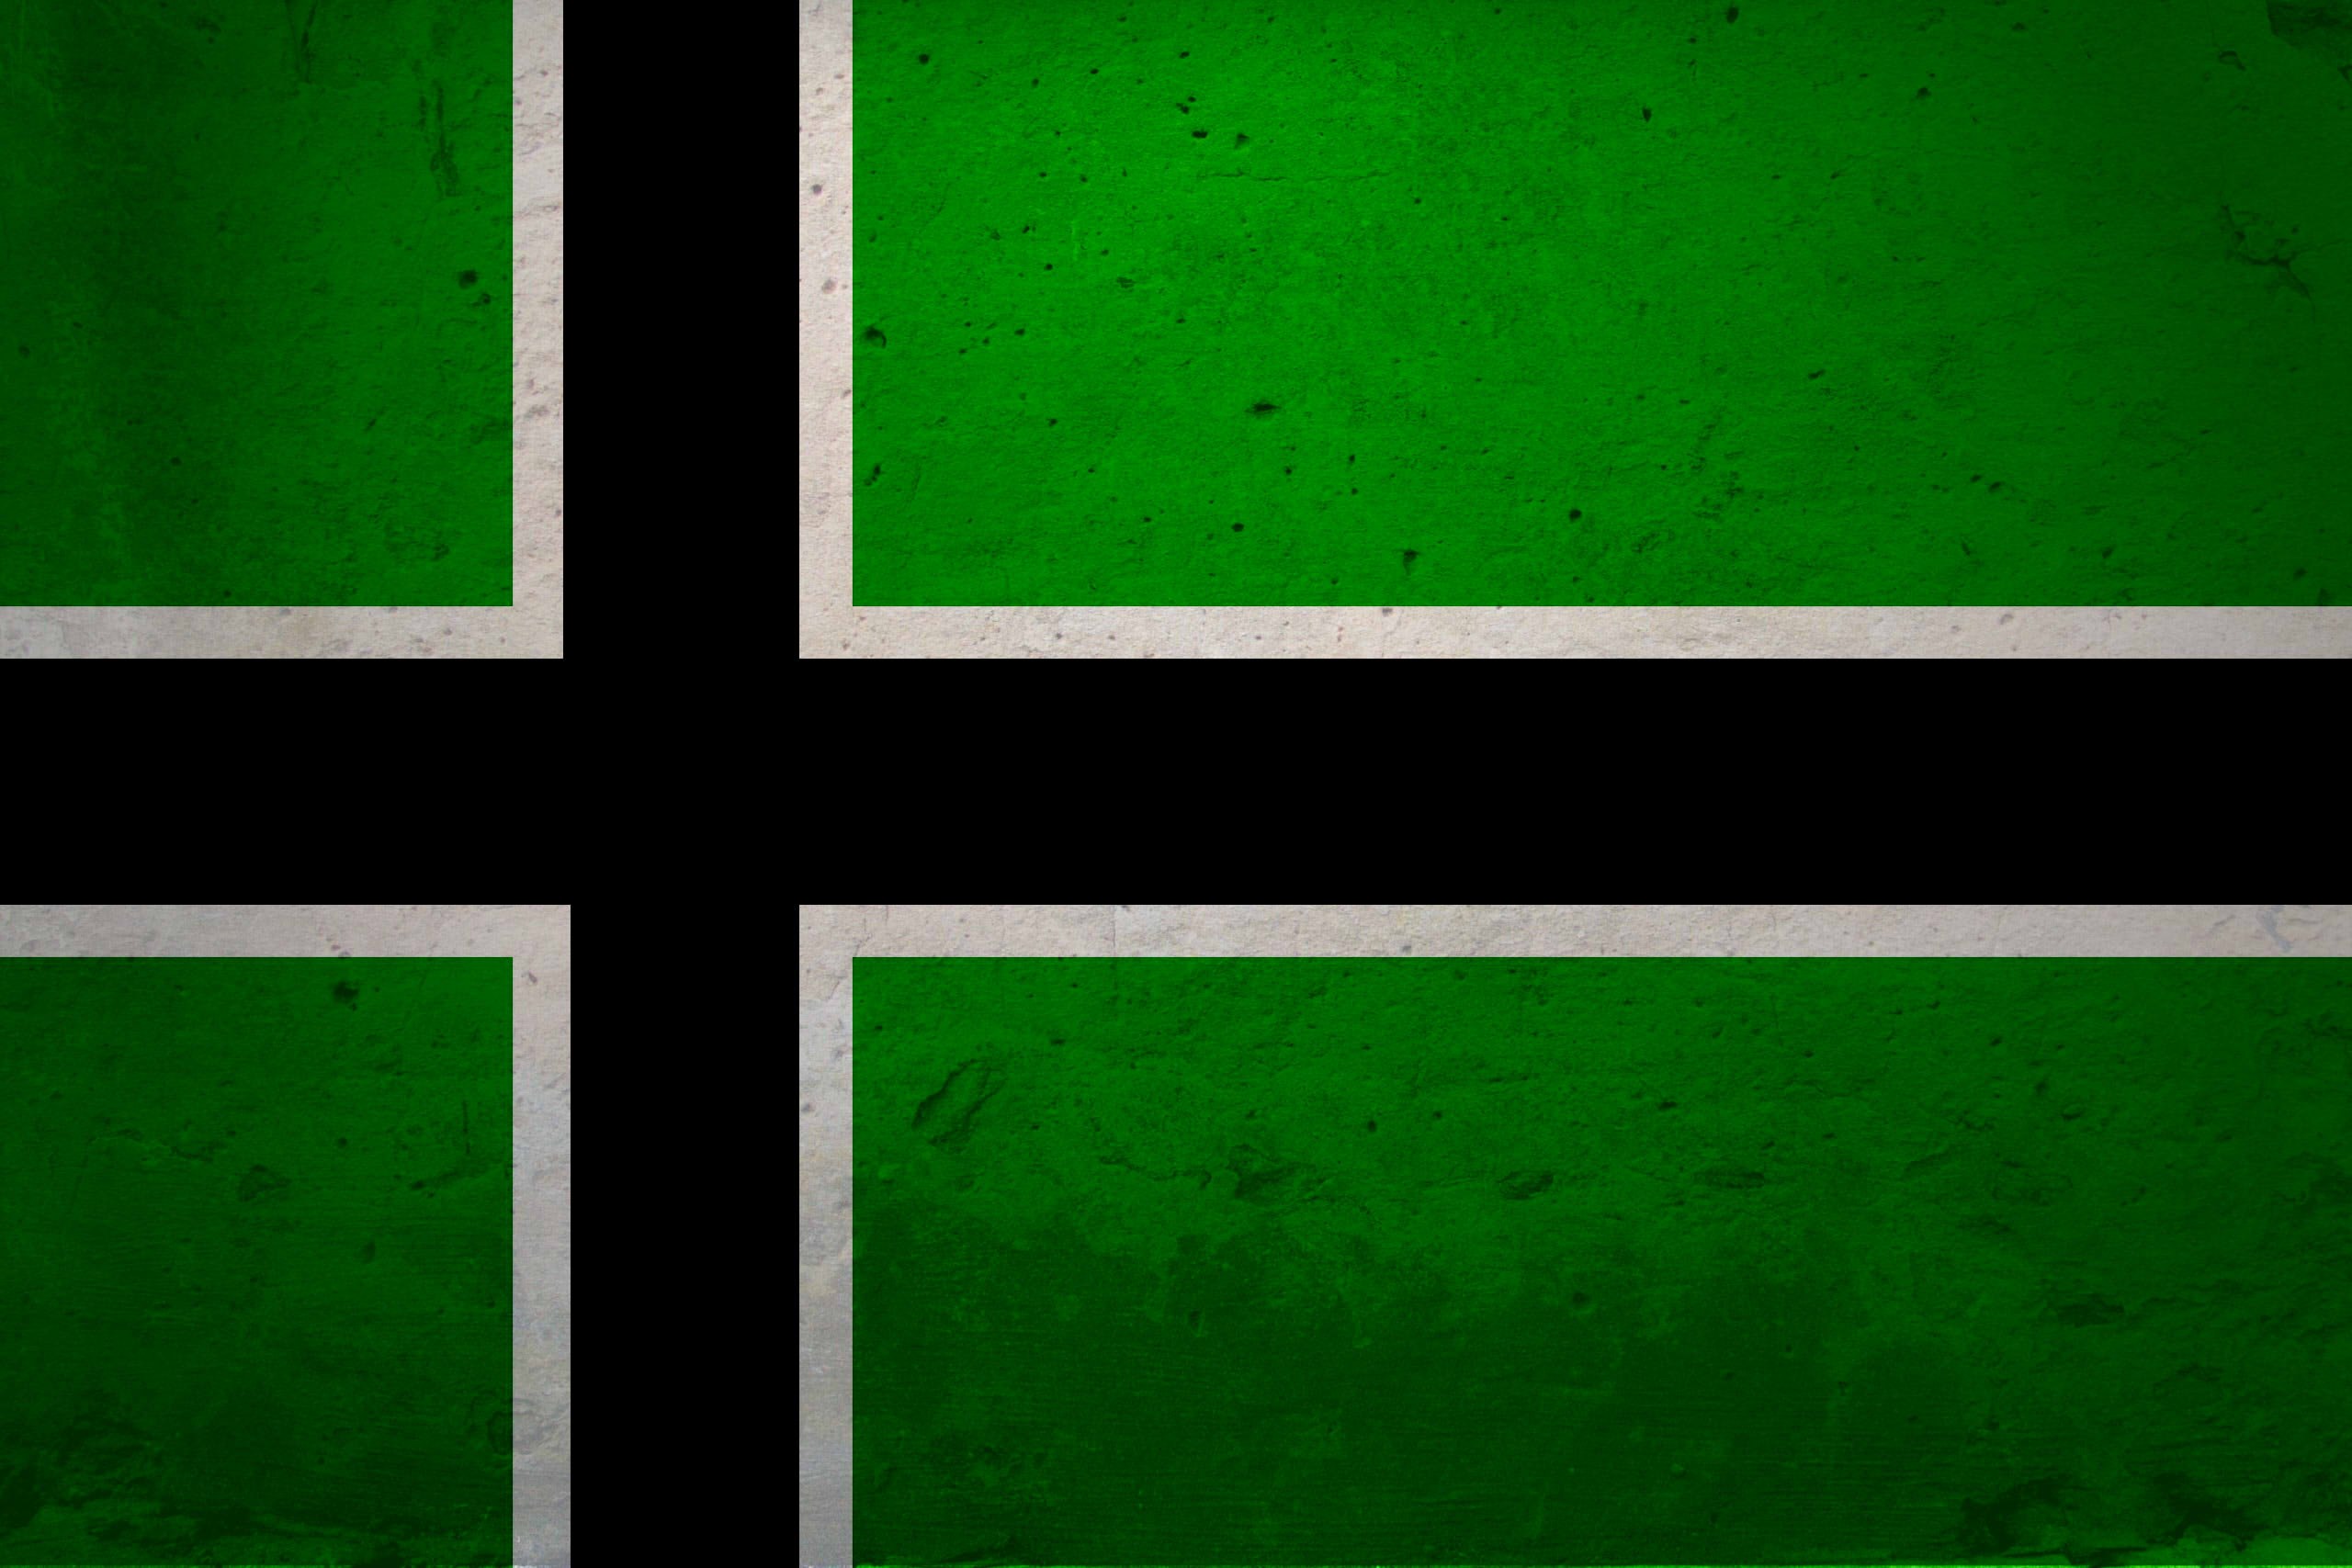 Белый флаг на зеленом фоне. Type o negative флаг. Type o negative флаг зеленый с черным крестом. Зеленый флаг. Флаг с крестом.